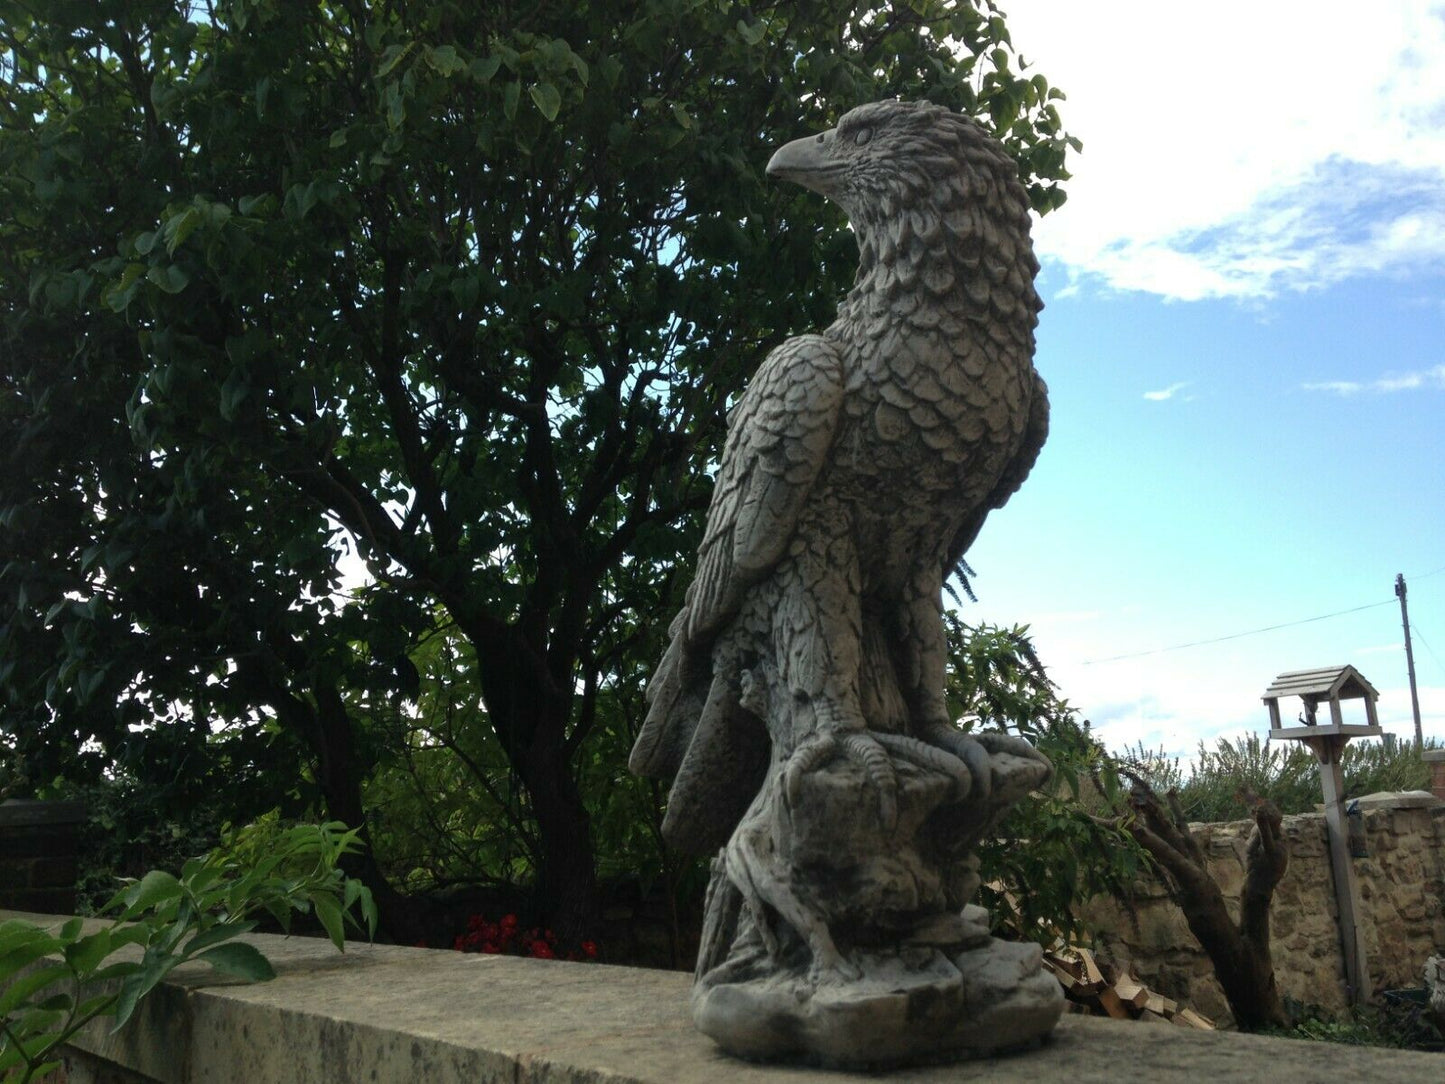 Stone Perched Eagle Ornament